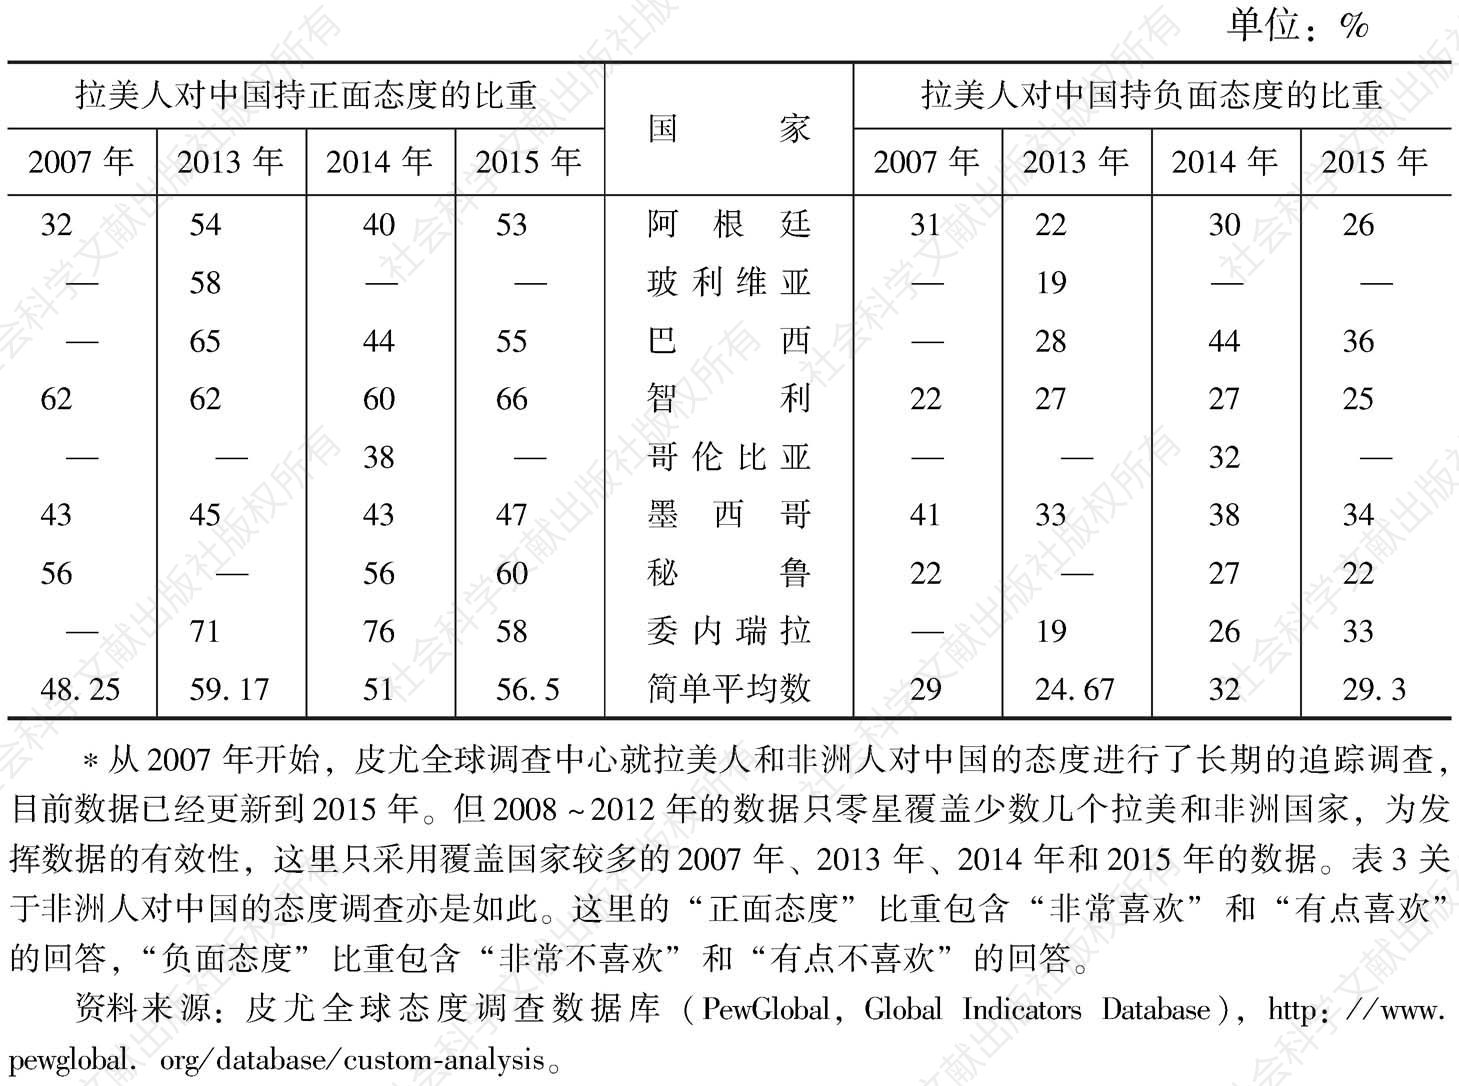 表2 拉美人对中国持正面和负面态度的比重比较*（2007年、2013年、2014年、2015年）